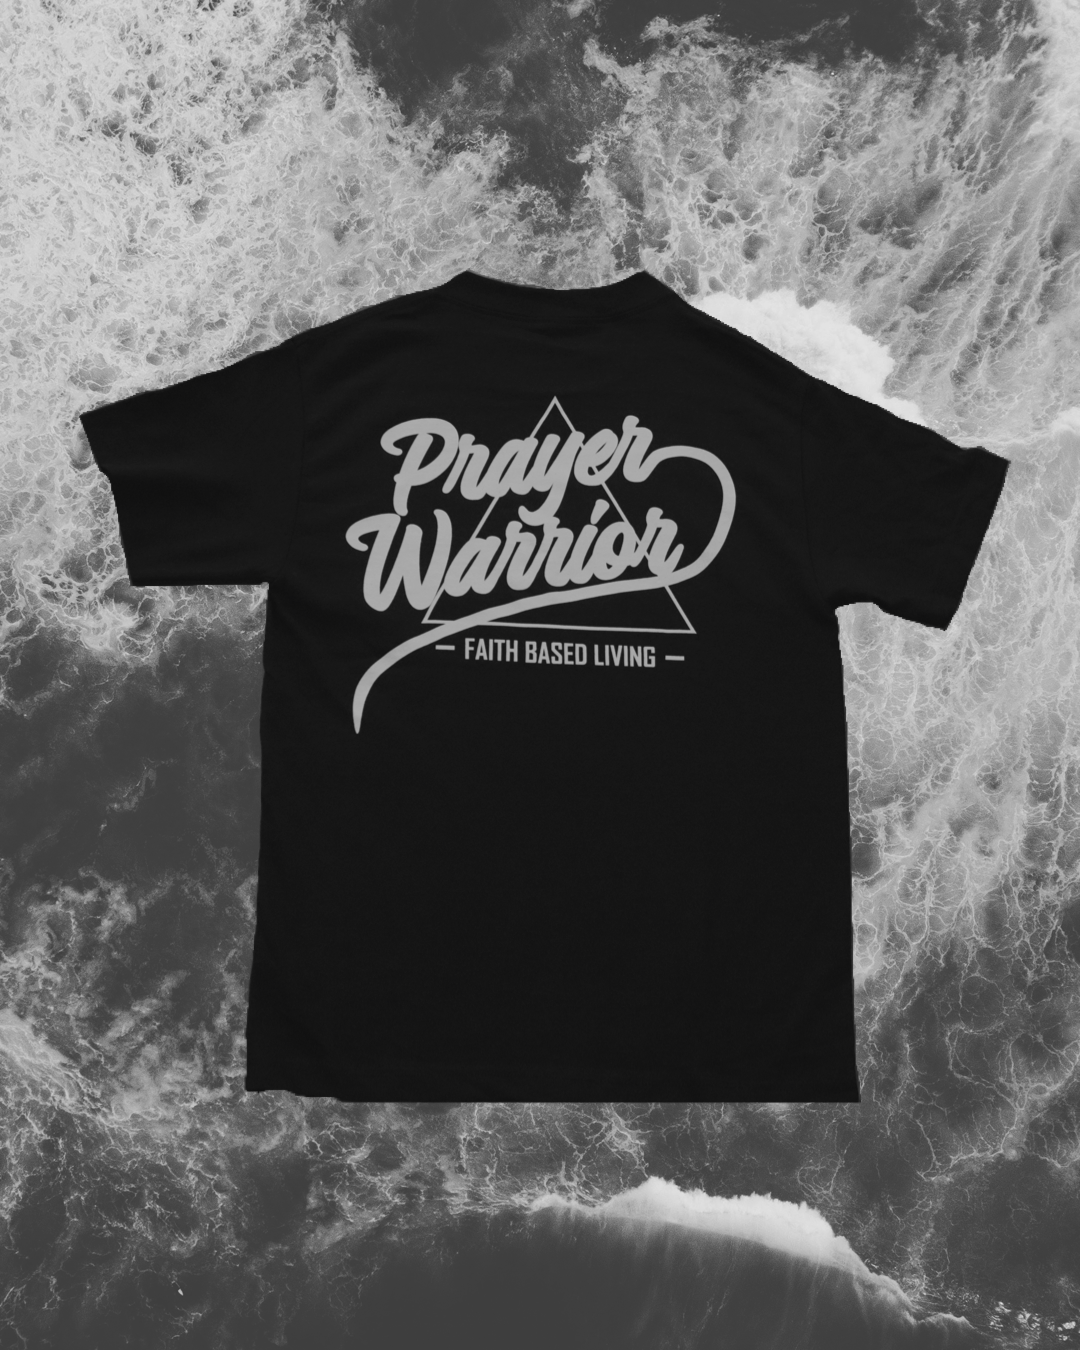 Black T-Shirt with white Prayer Warrior logo (BACK)